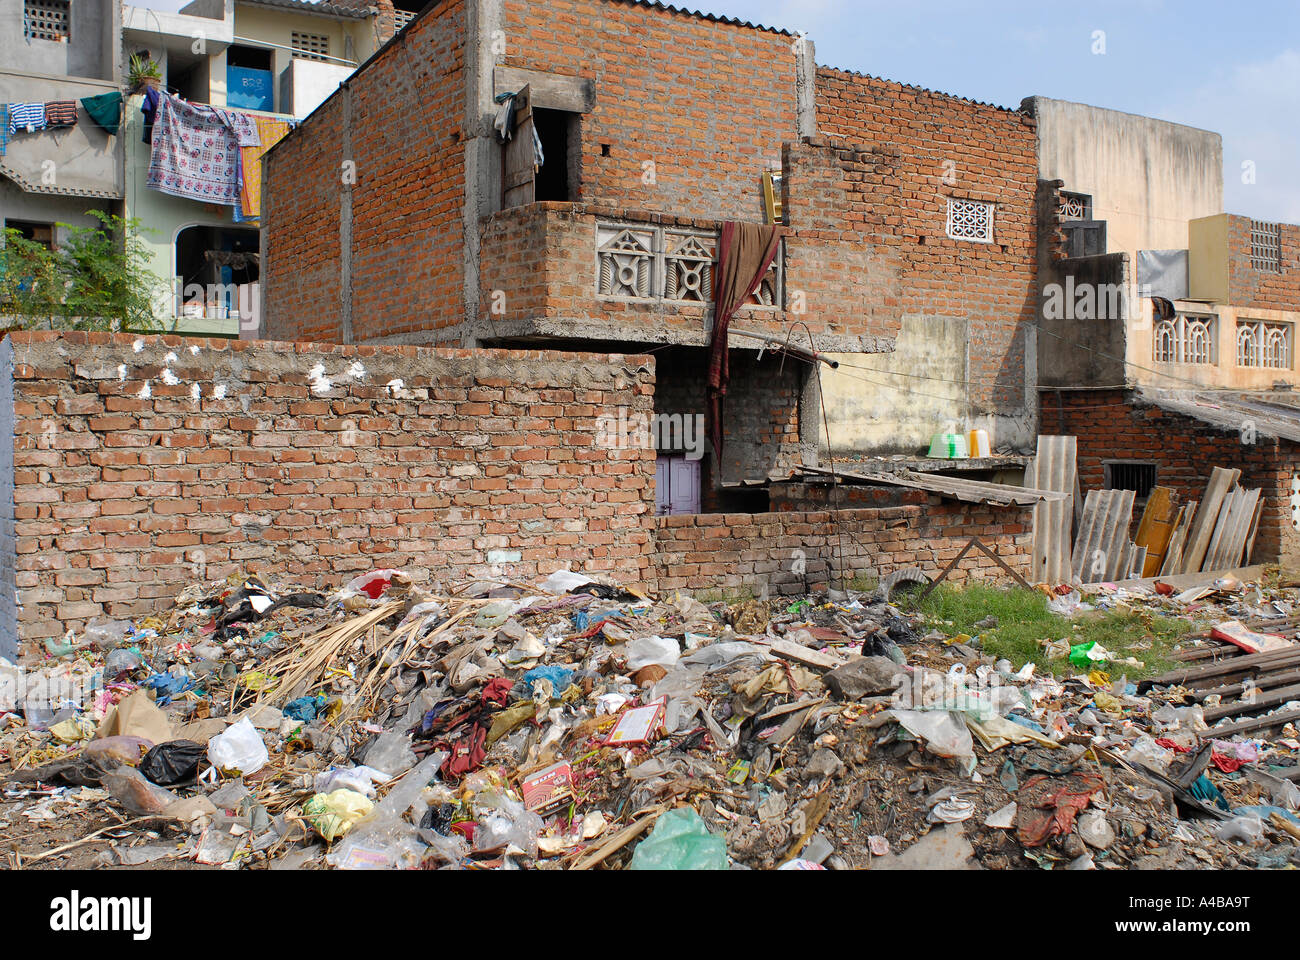 Stock Bild von einem Slum in Chennai und der Müll, der um ihn herum geworfen ist Stockfoto